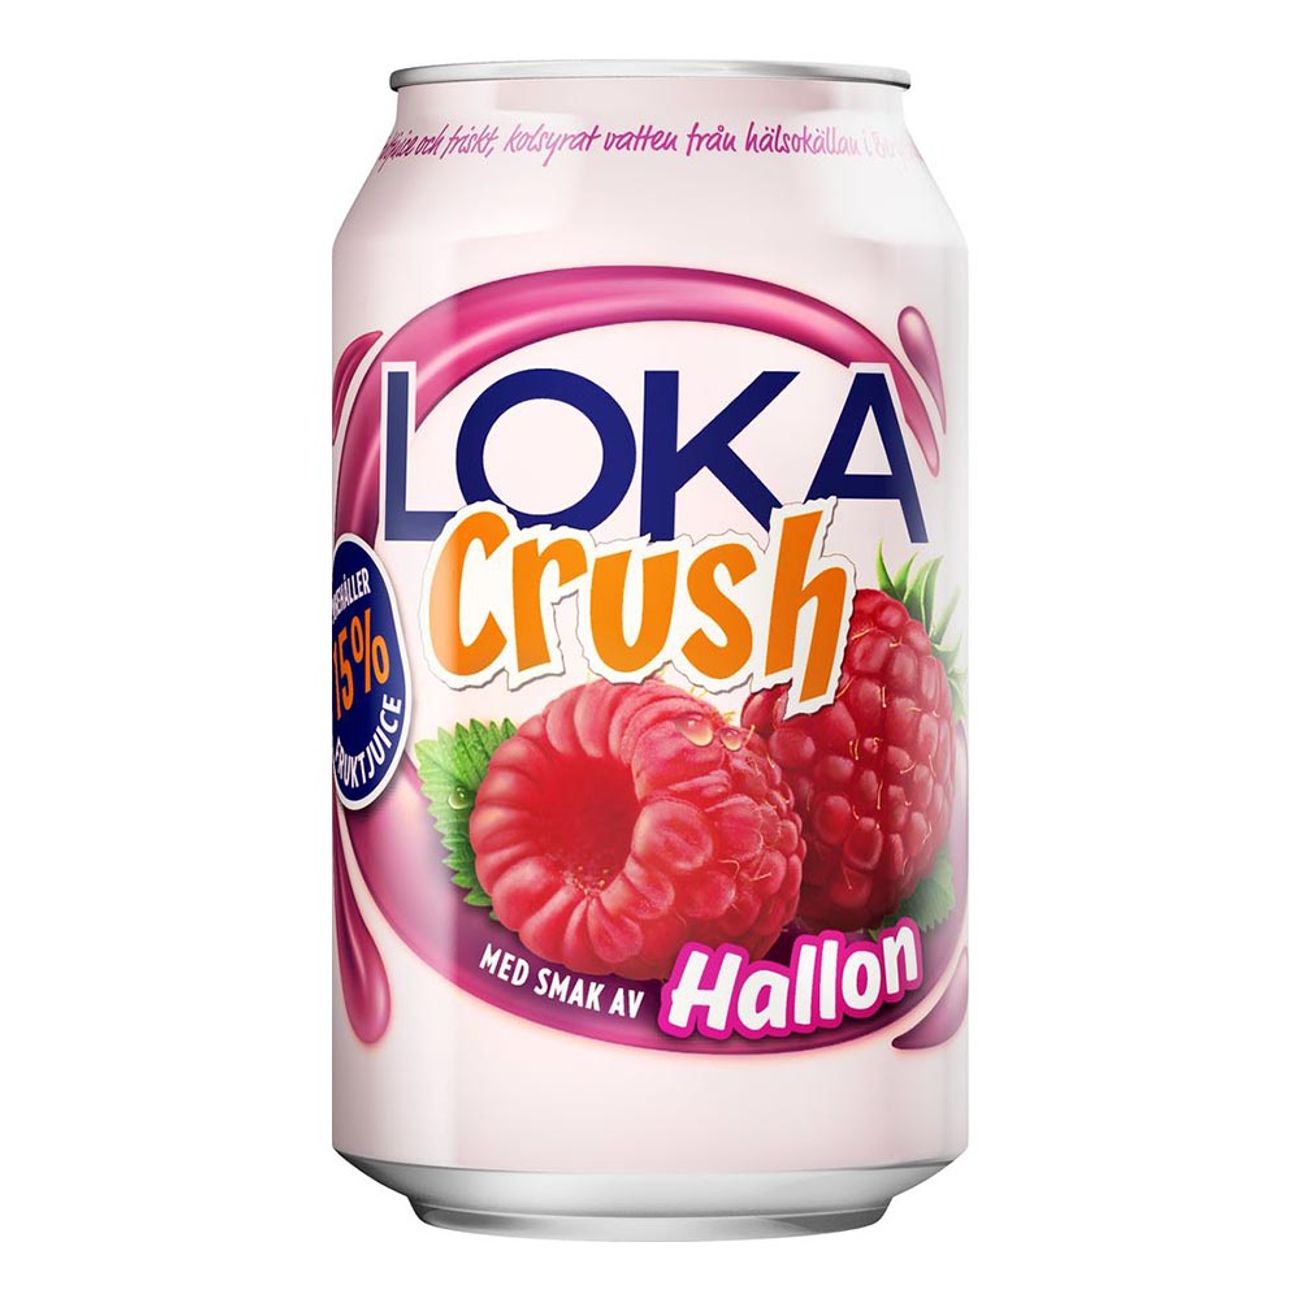 loka-crush-hallon-1